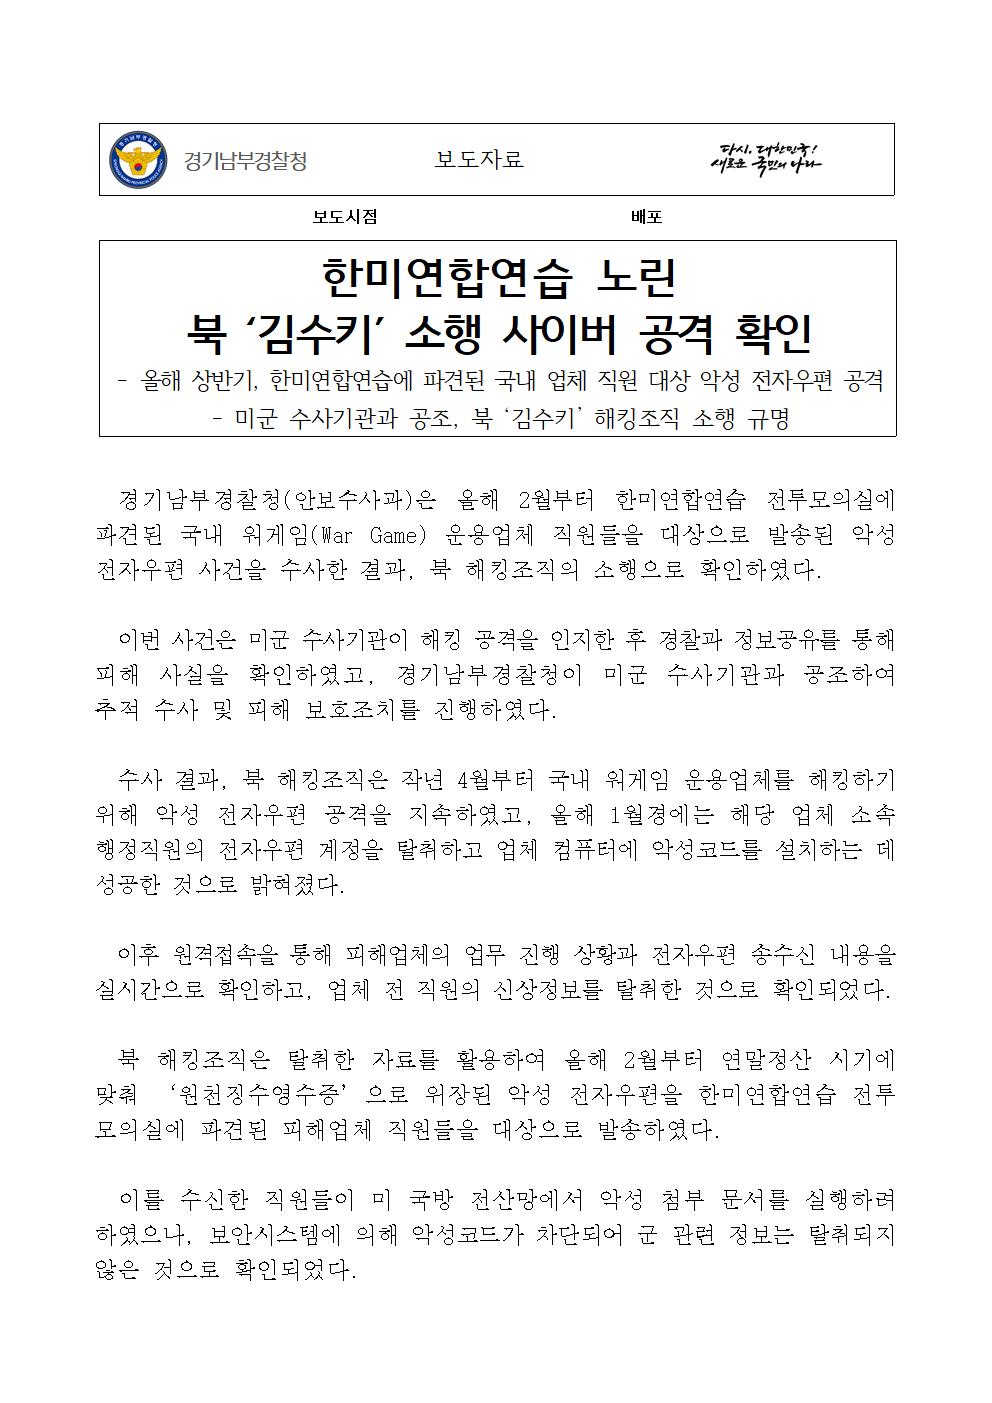 (보도자료) 한미연합연습 노린 북 ‘김수키’ 소행 사이버 공격 확인